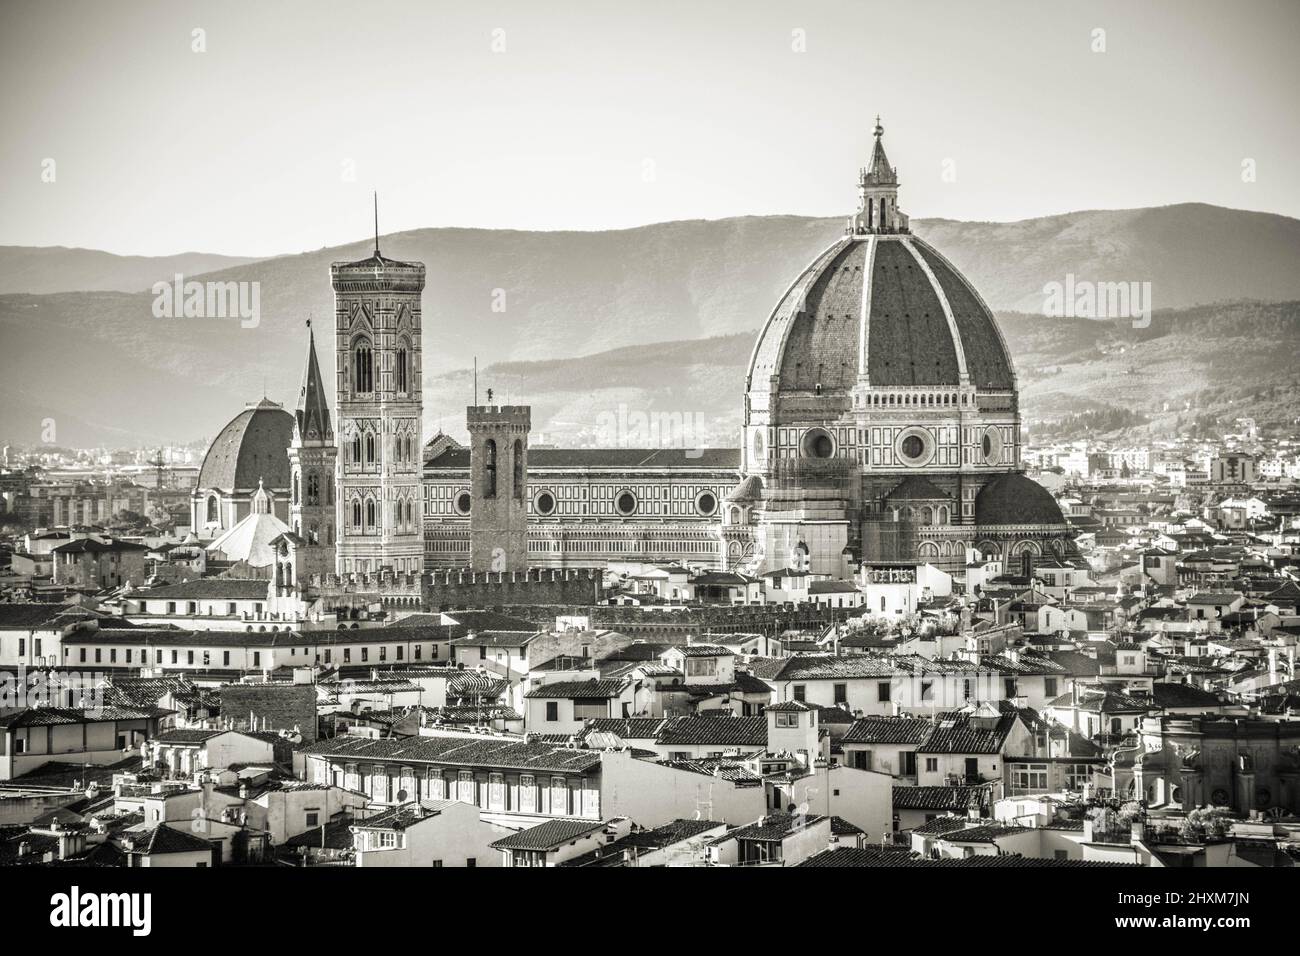 La catedral de Florencia, que es la Cattedrale di Santa Maria del Fiore, es la catedral de Florencia, Italia. Se inició en 1296 en estilo gótico. Foto de stock